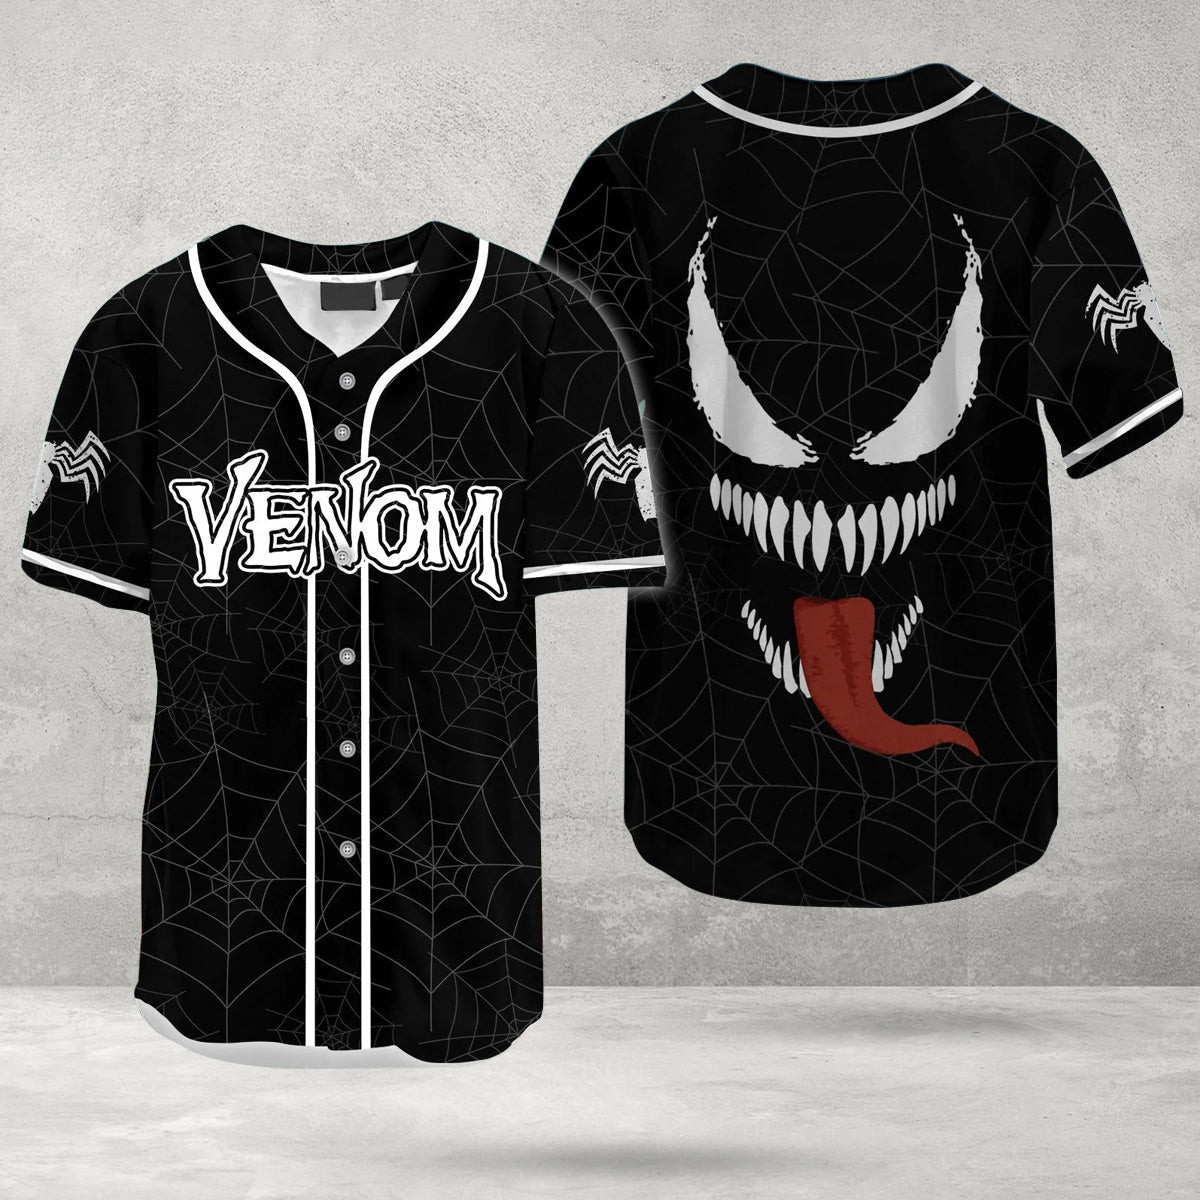 American Superhero Venom Character Jersey Shirt